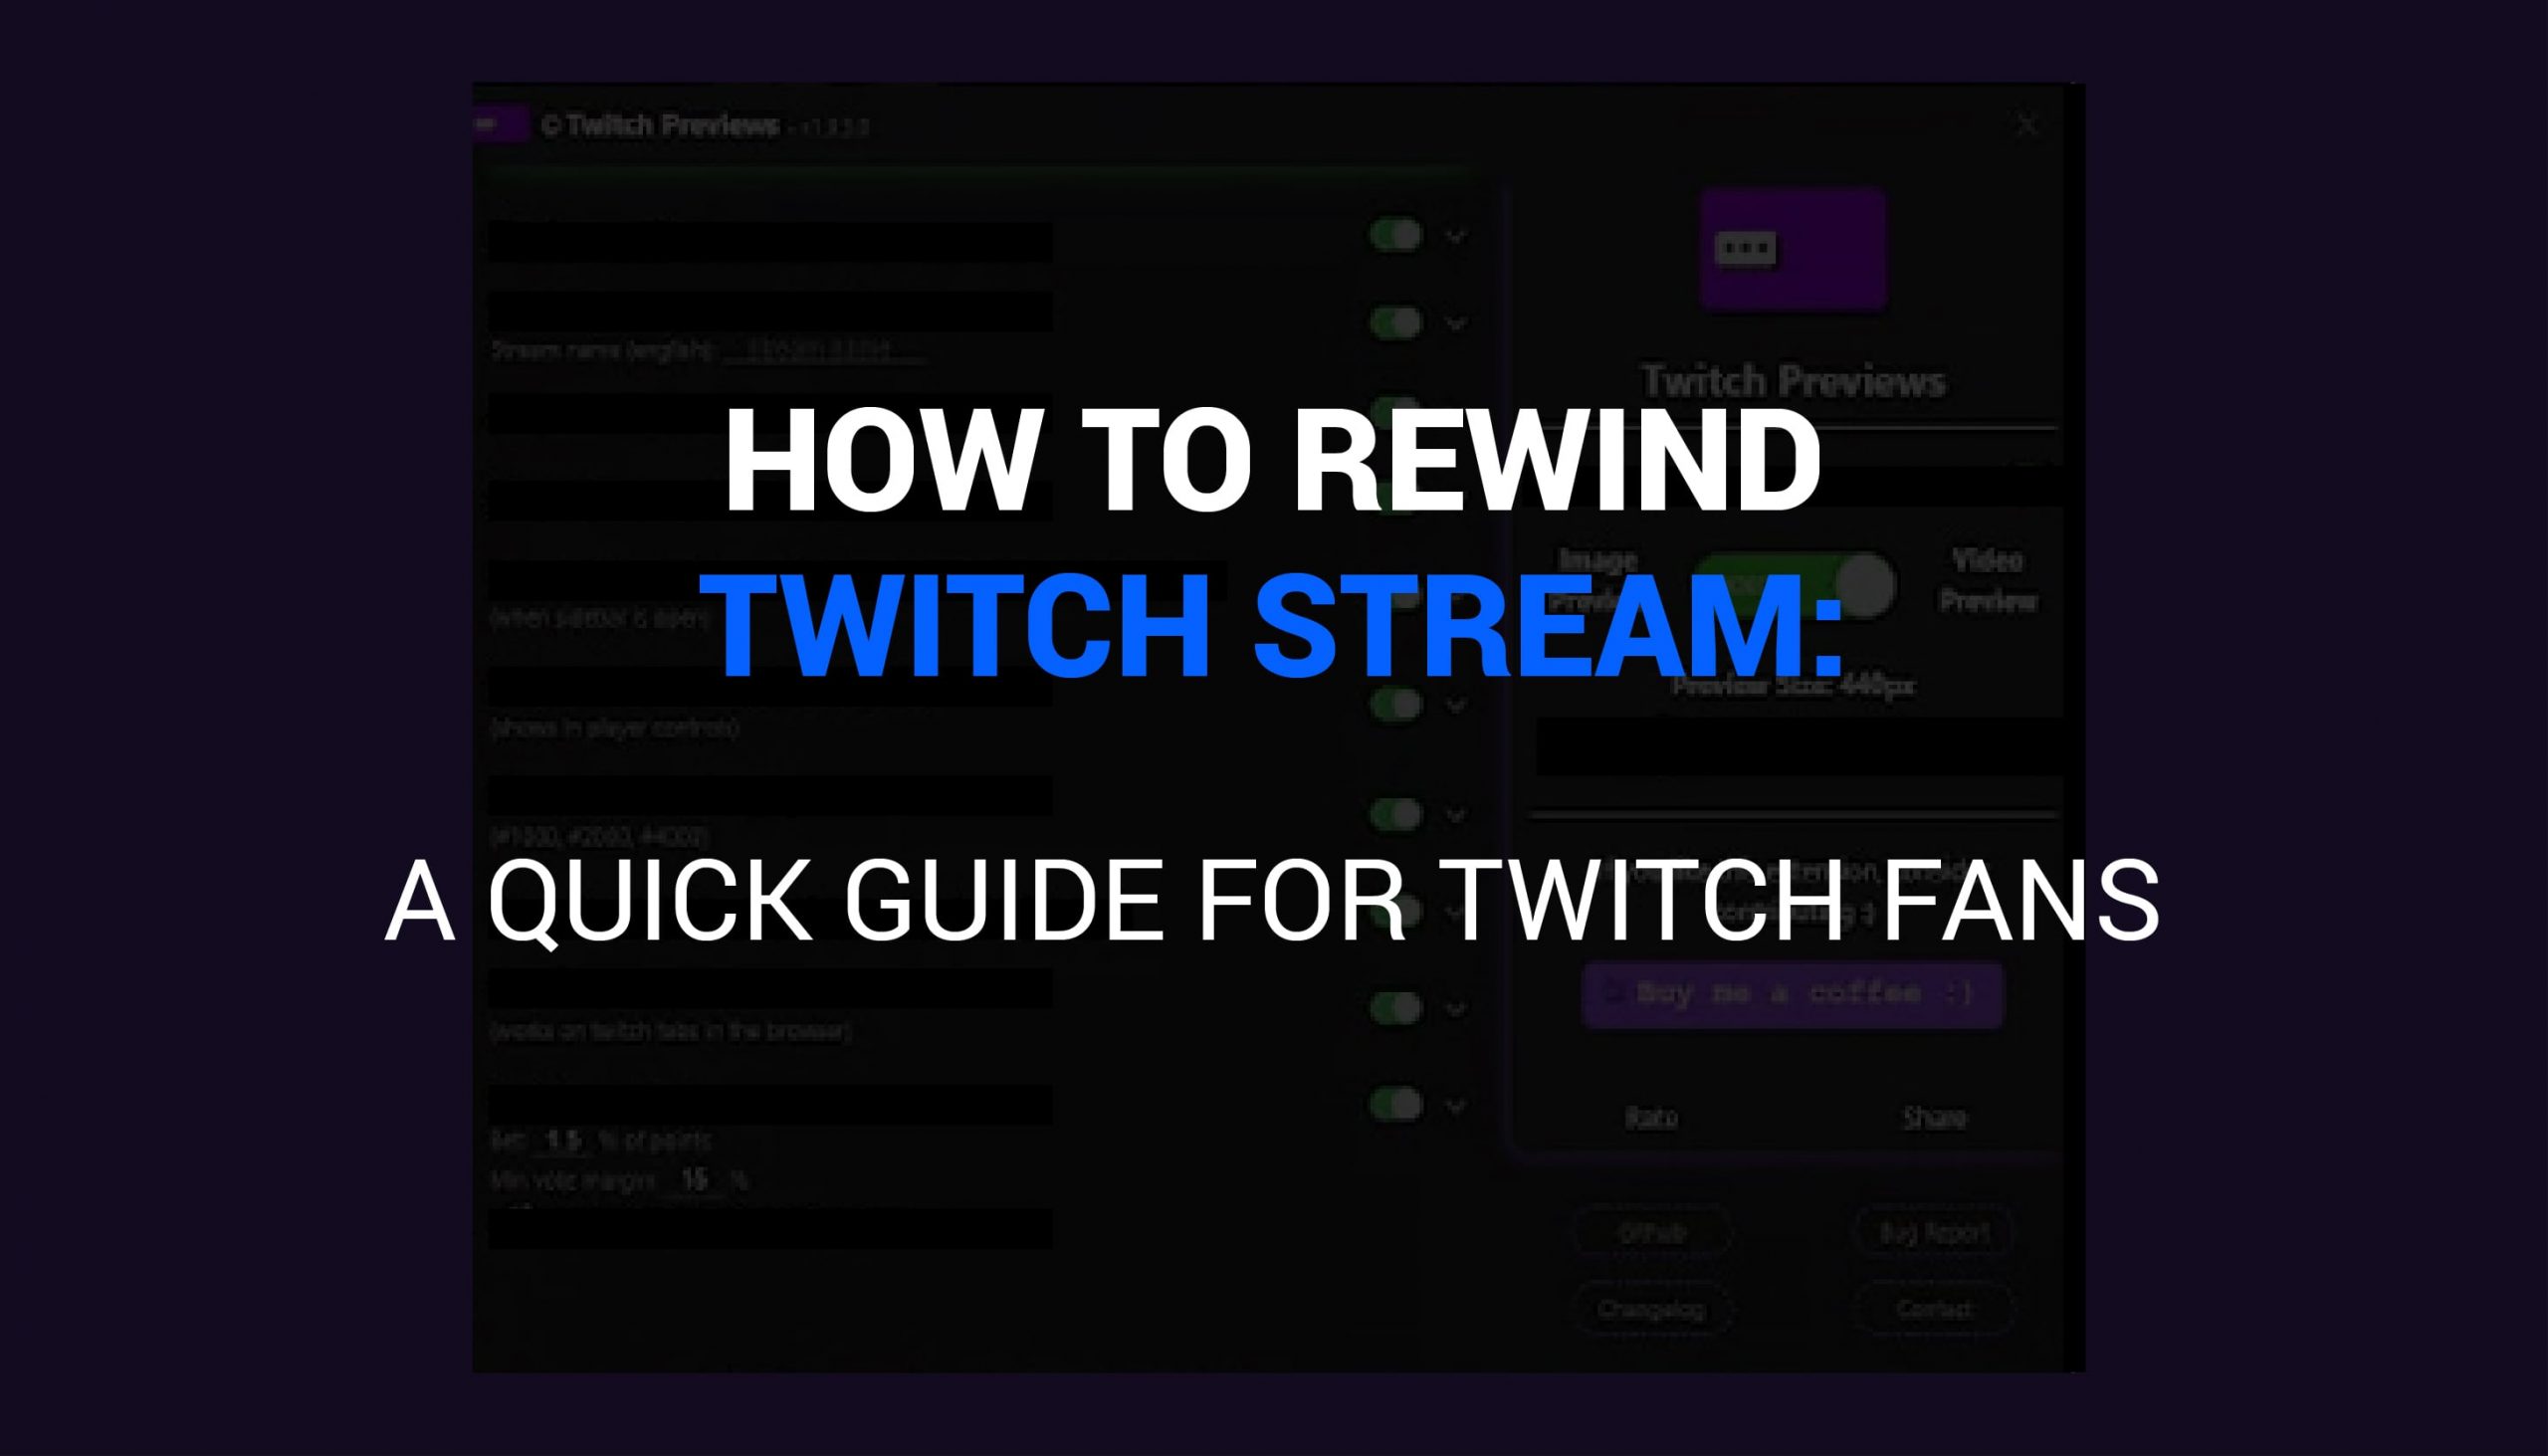 How to rewind twitch streams